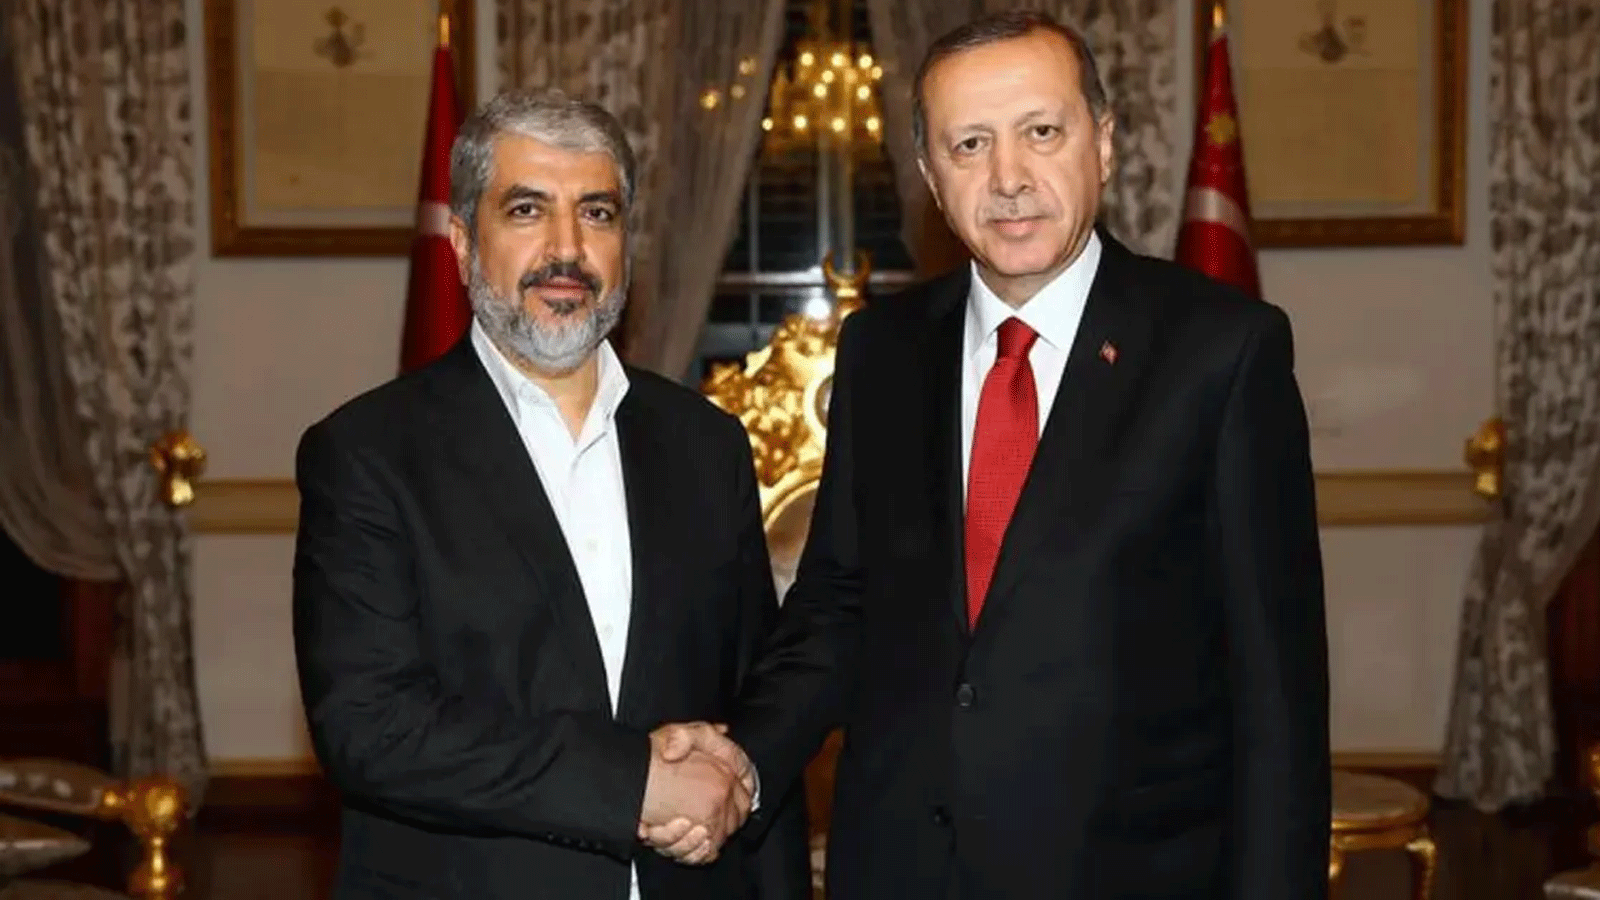 صورة أرشيفية تُظهر زعيم حماس السياسي الفلسطيني خالد مشعل والرئيس التركي رجب طيب إردوغان(الرئاسة التركية)